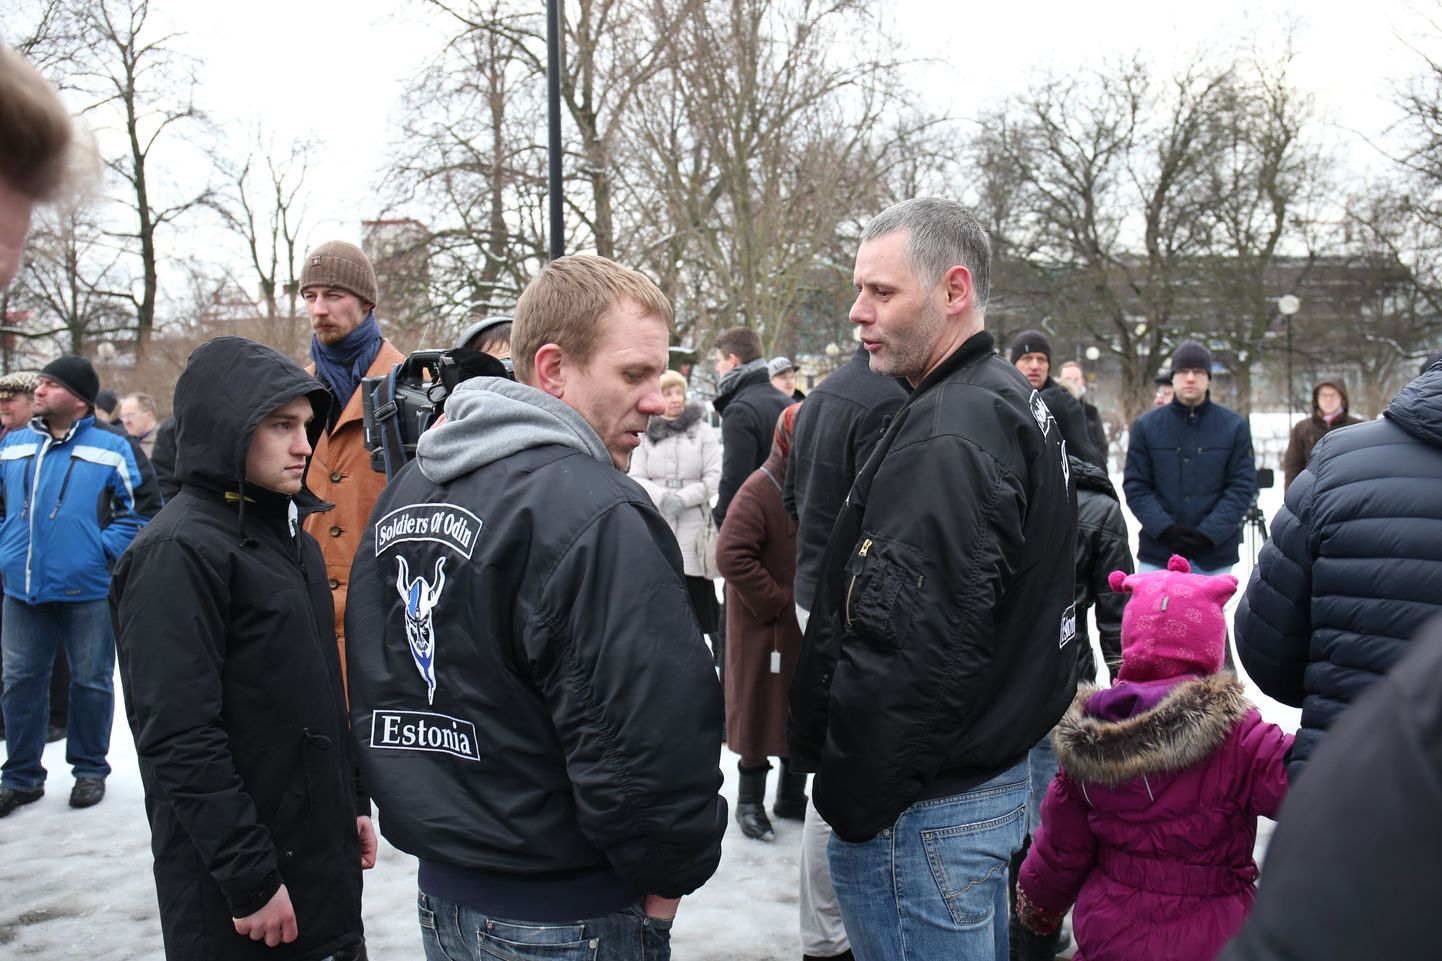 Собрание Таллиннского клуба националистов, Партии народного единства и "Воинов Одина".